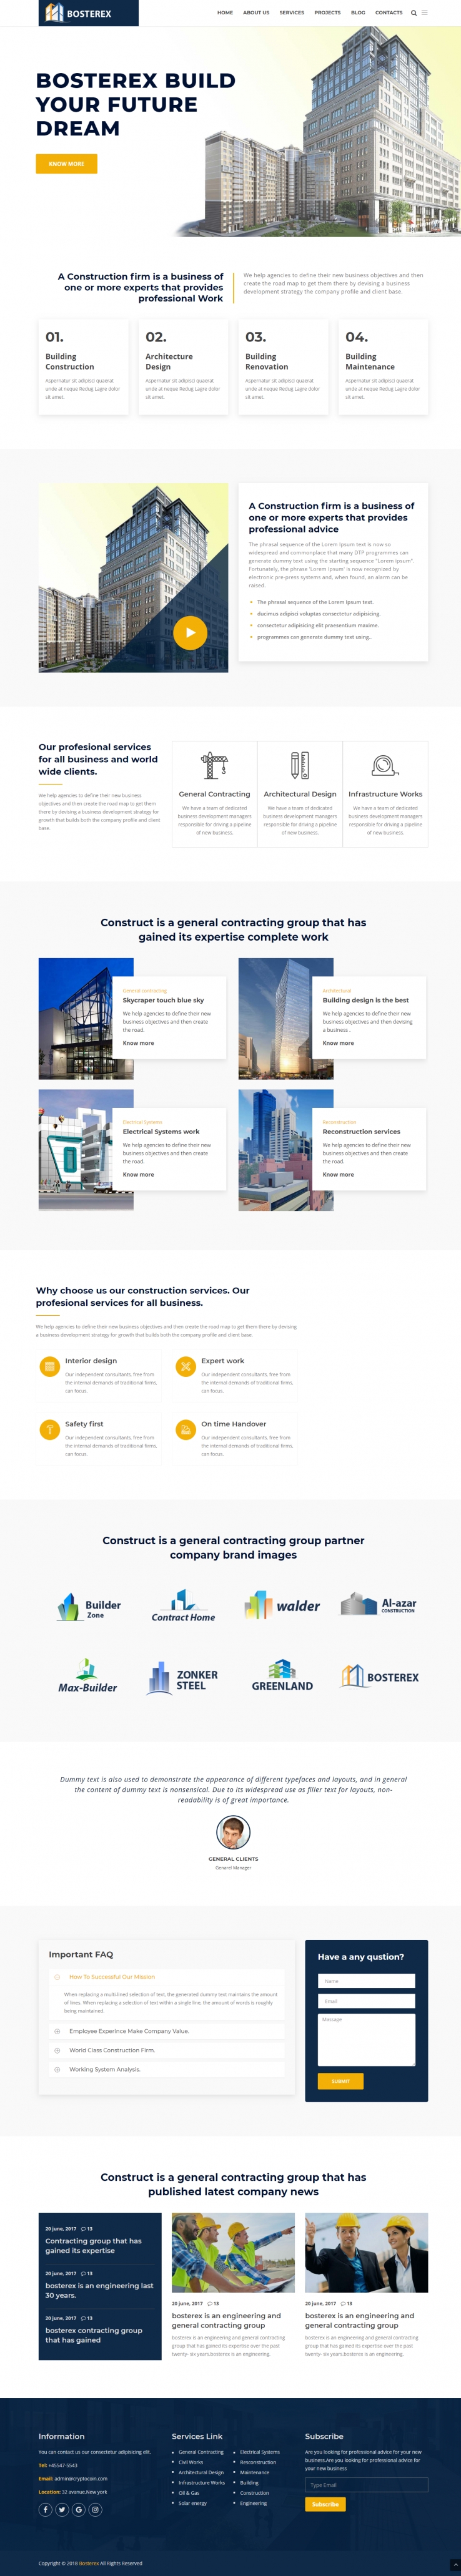 黄色欧美风格的建筑设计行业企业网站源码下载